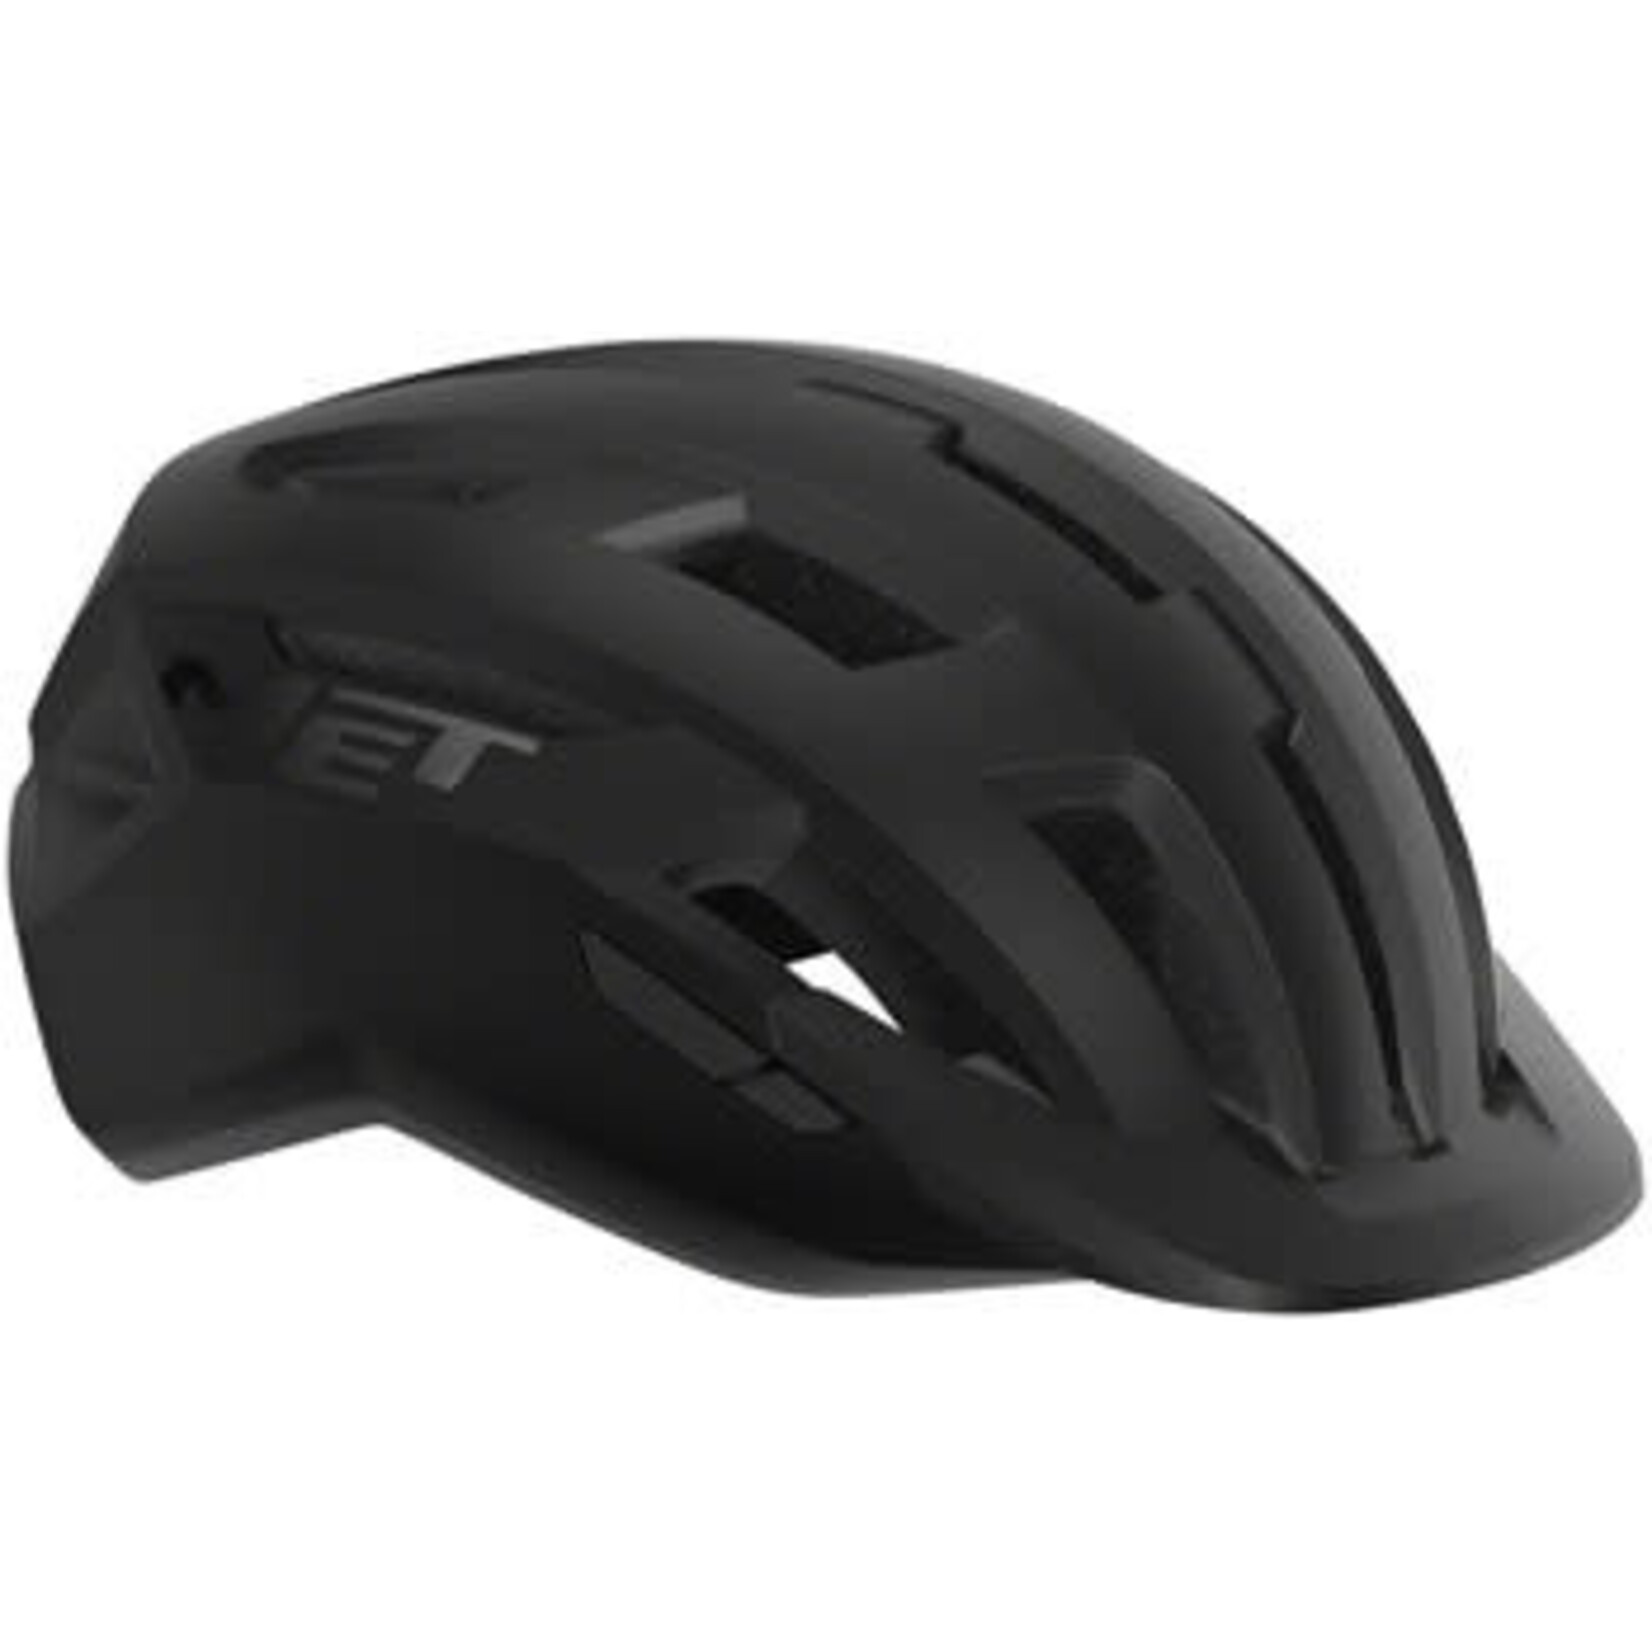 MET Helmets MET Allroad MIPS Helmet - Black, Matte, Large